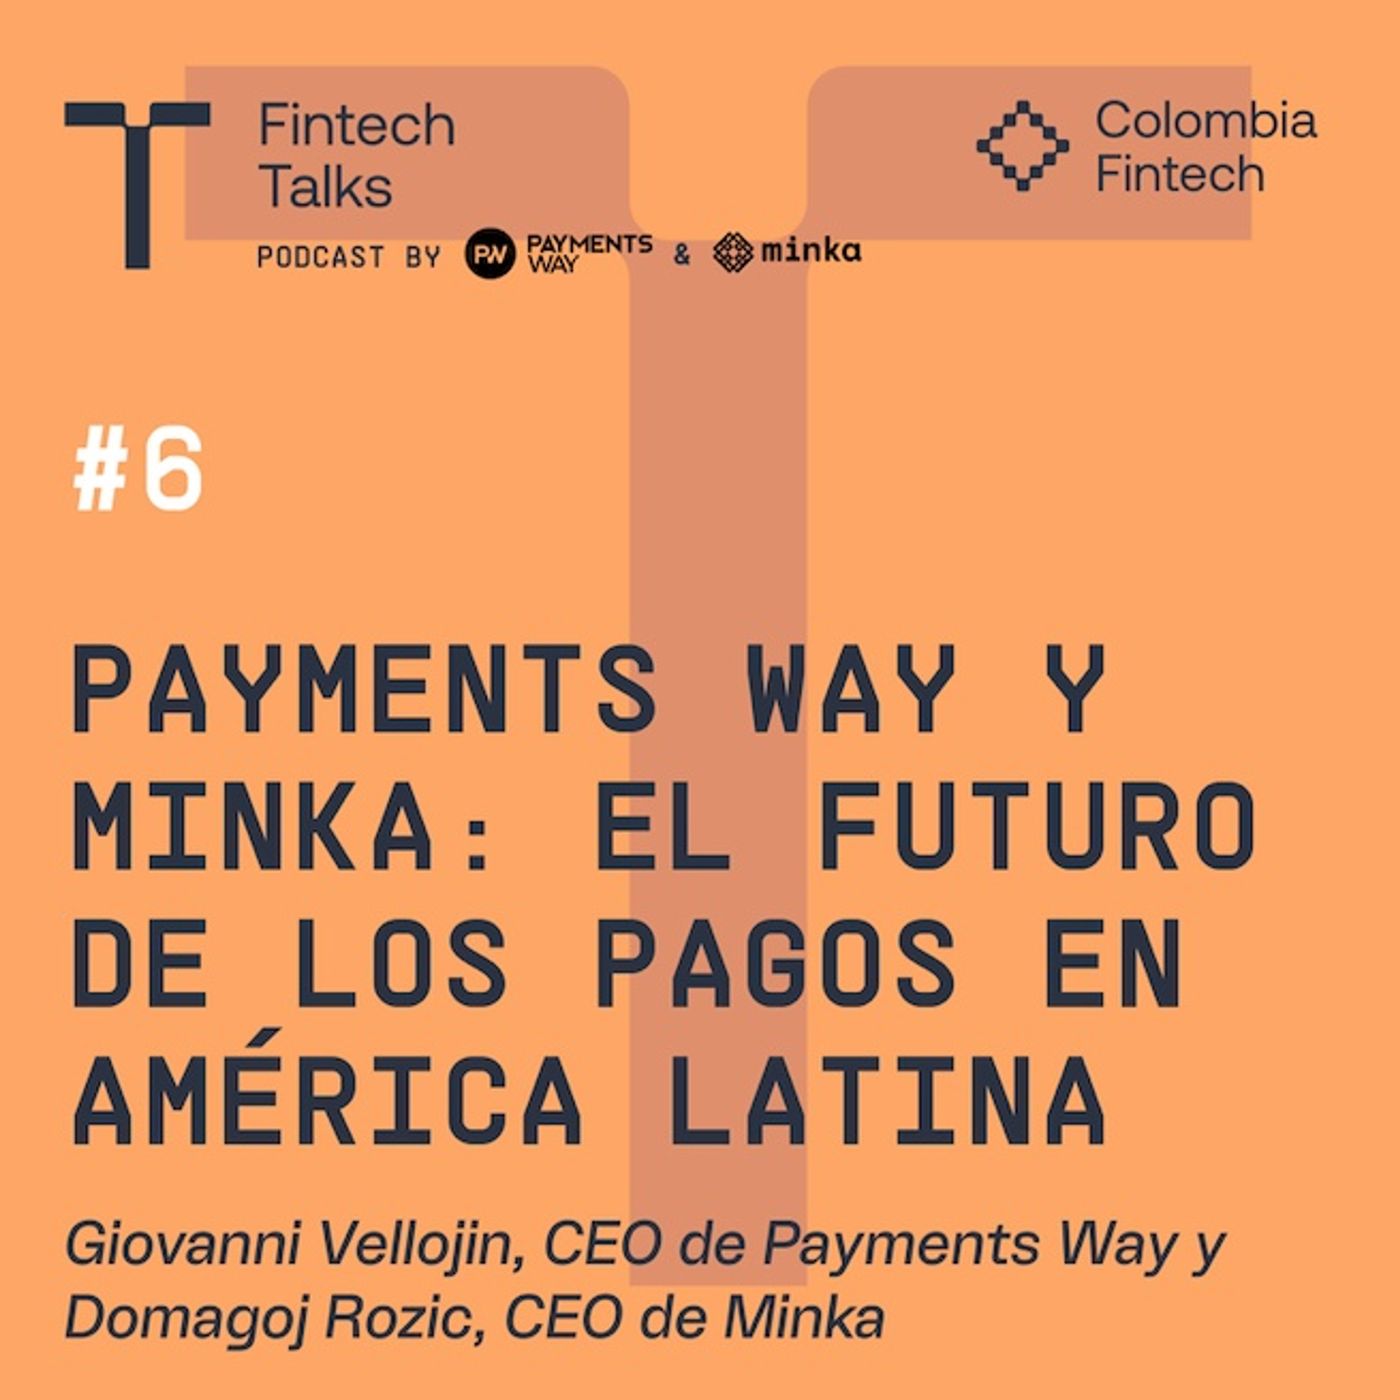 Payments Way y Minka: El futuro de los pagos en América Latina